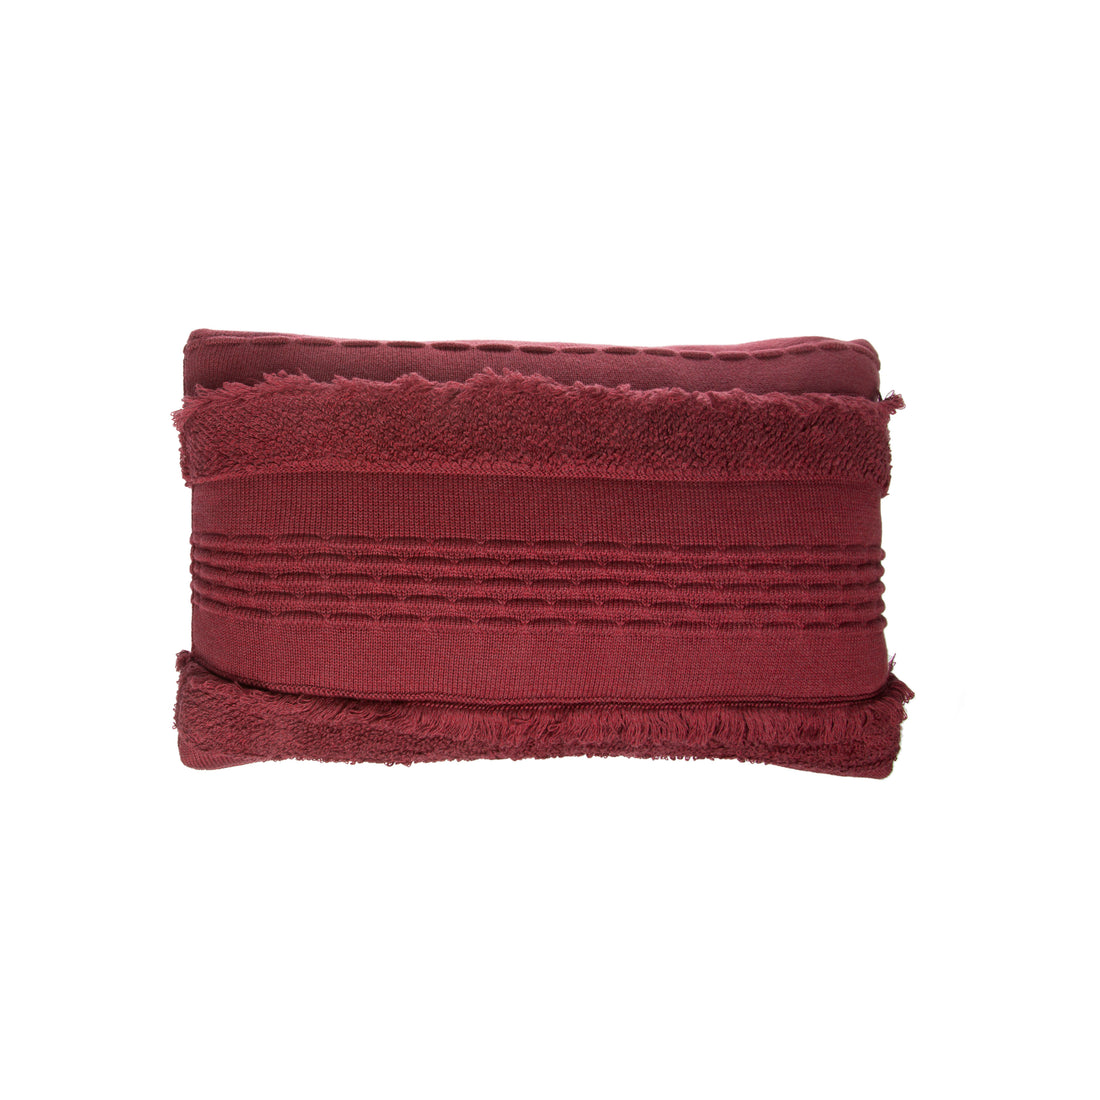 lorena-canals-air-savannah-red-machine-washable-knitted-cushion- (1)